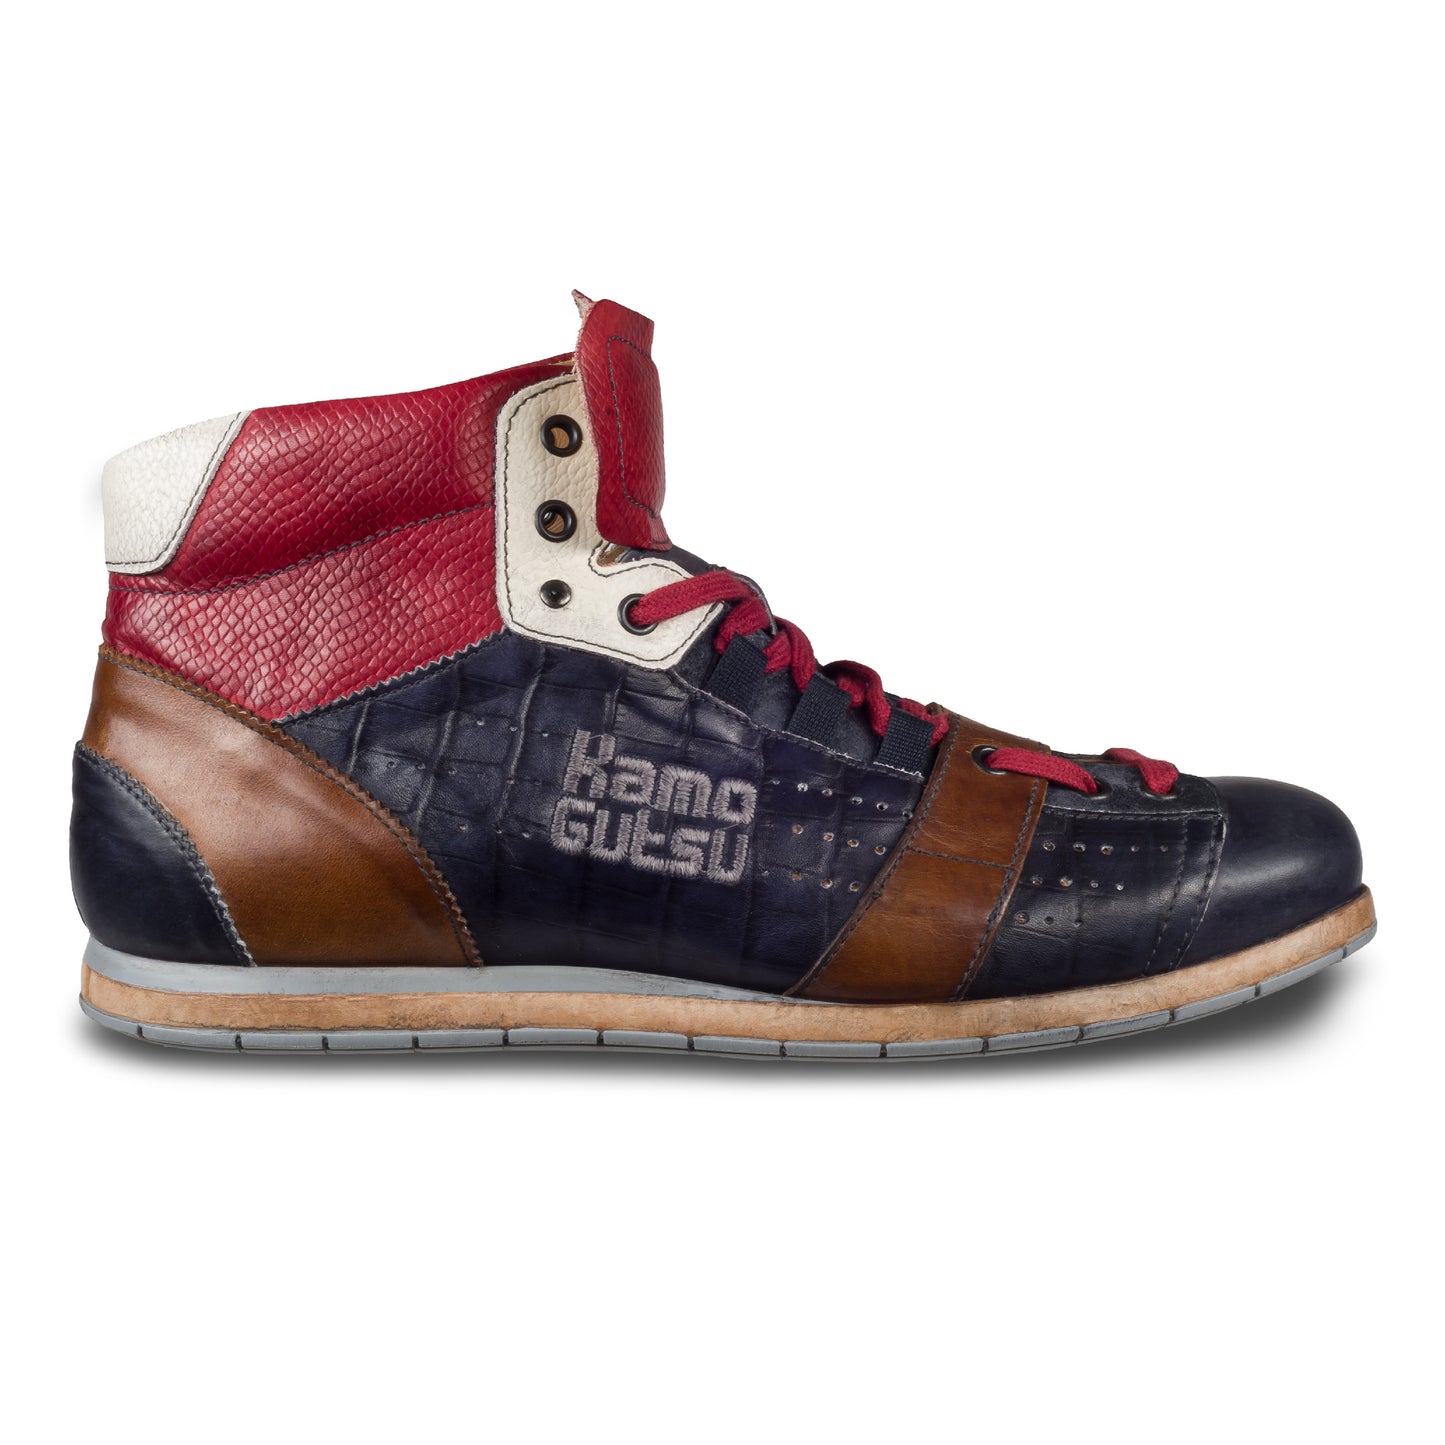 KAMO-GUTSU Italienischer Herren Leder Sneaker Stiefel, blau rot braun, Retro-Optik, Modell TIFO-105 navy mamba rosso. Handgefertigt. Seitliche Ansicht der Außenseite rechter Schuh.